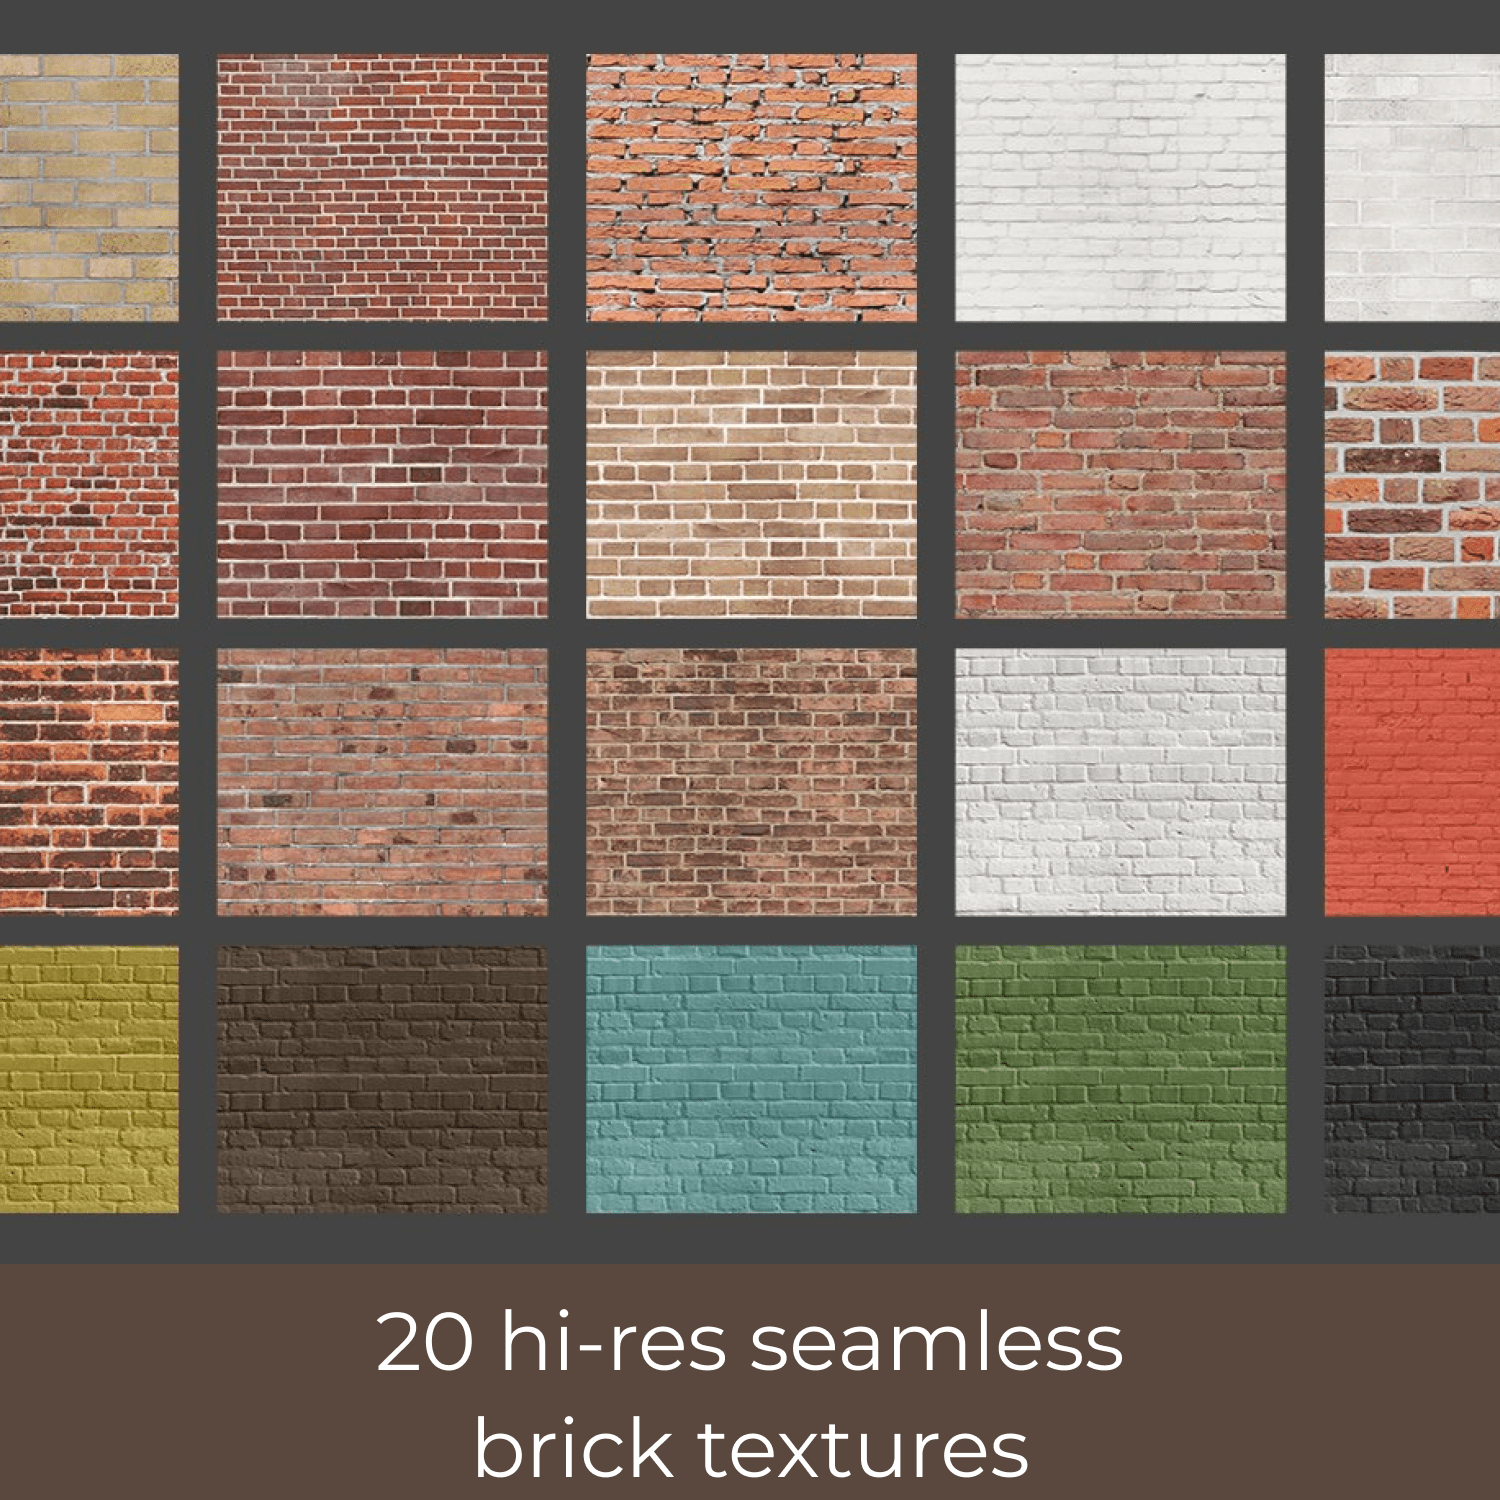 20 Hi-Res Seamless Brick Textures.